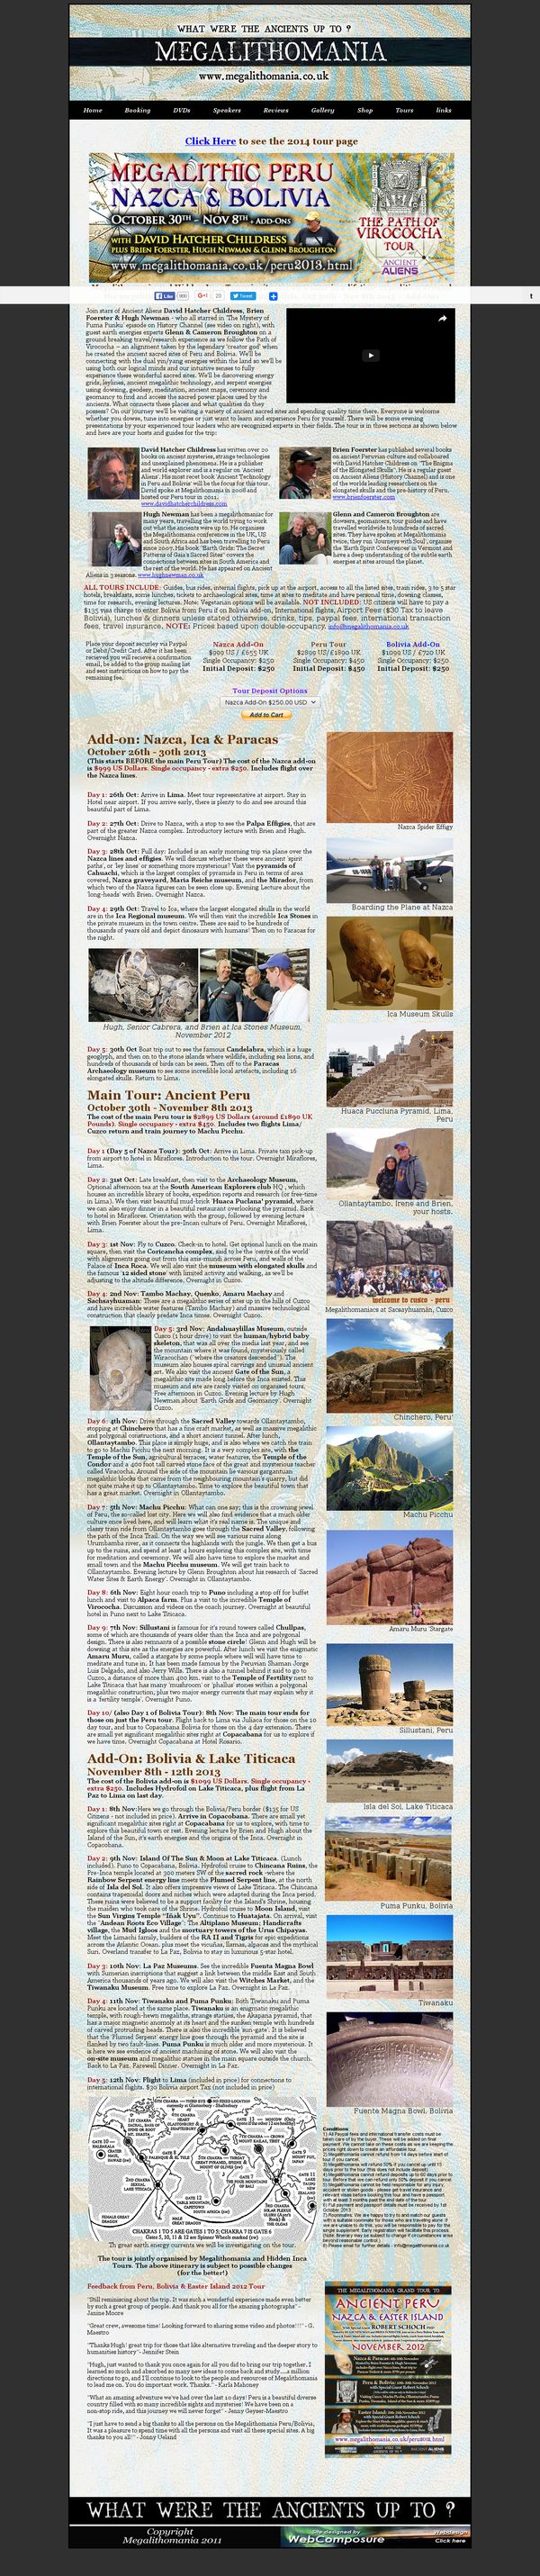 Megalithomania Peru, Nazca & Bolivia Tour November 2013